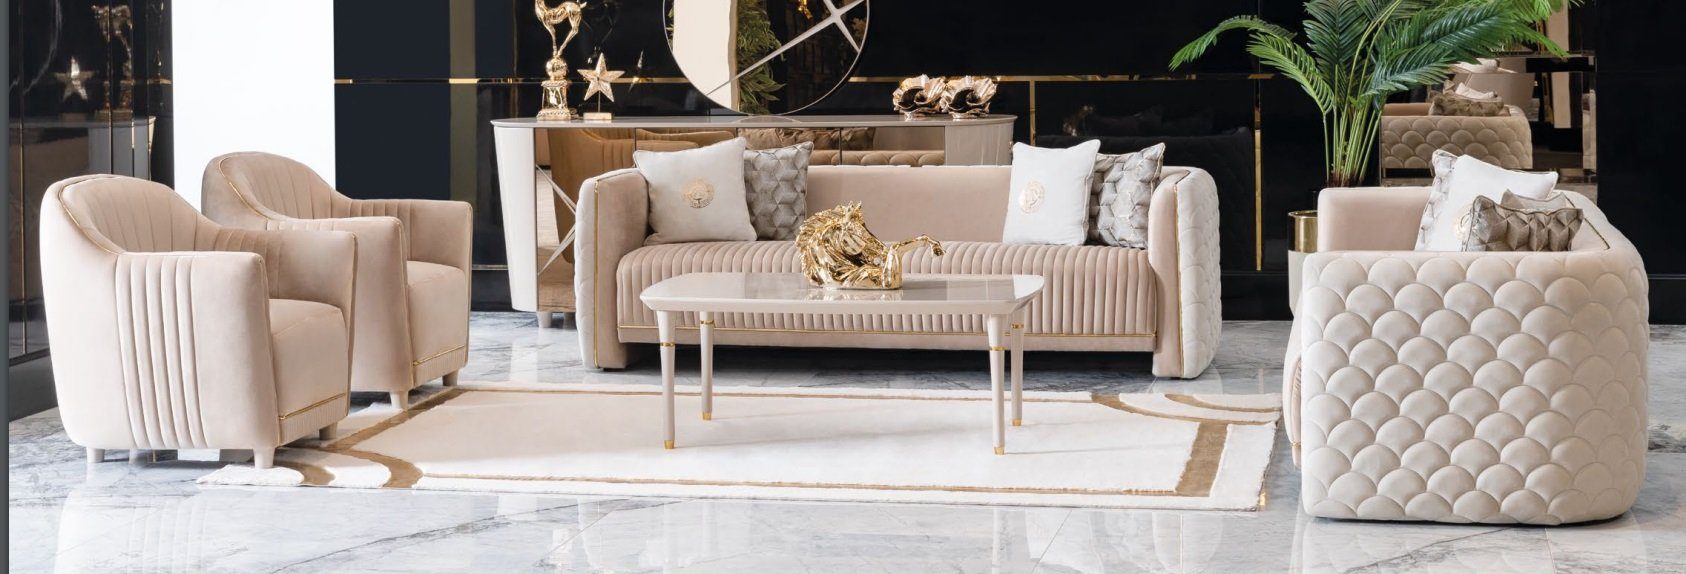 JVmoebel Sofa Beige Couchgarnitur 3+3+1+1 Made Sofas, Sityer Luxus Samt Couchen Holy in Europe